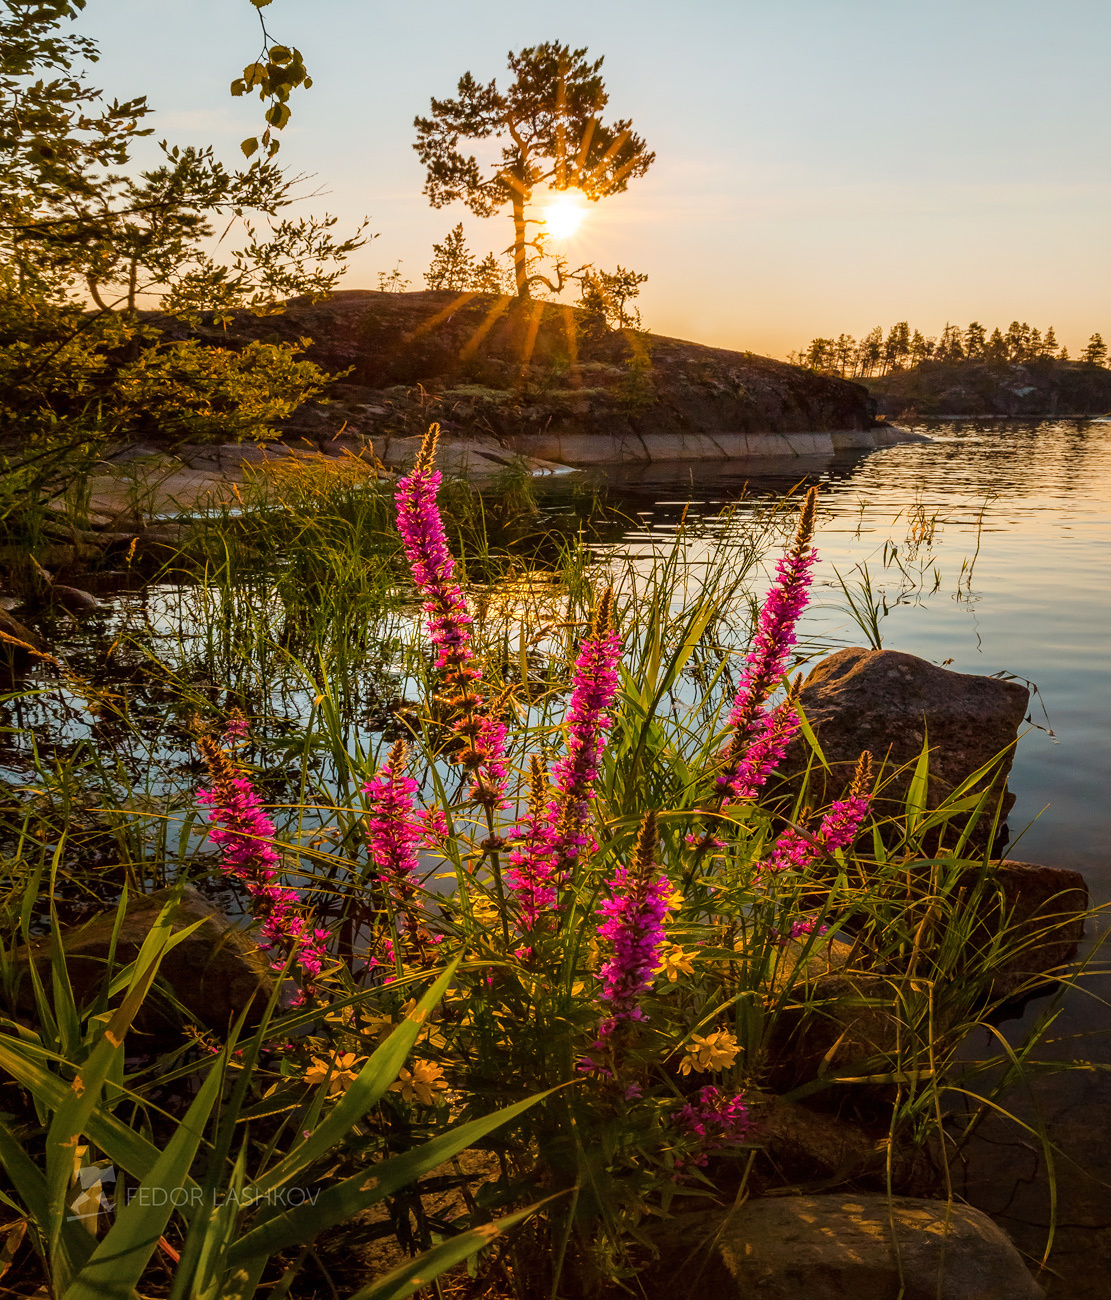 Летняя Ладога Ладожское озеро Карелия шхеры лето остров гранит рассвет вода сосны флора цветы